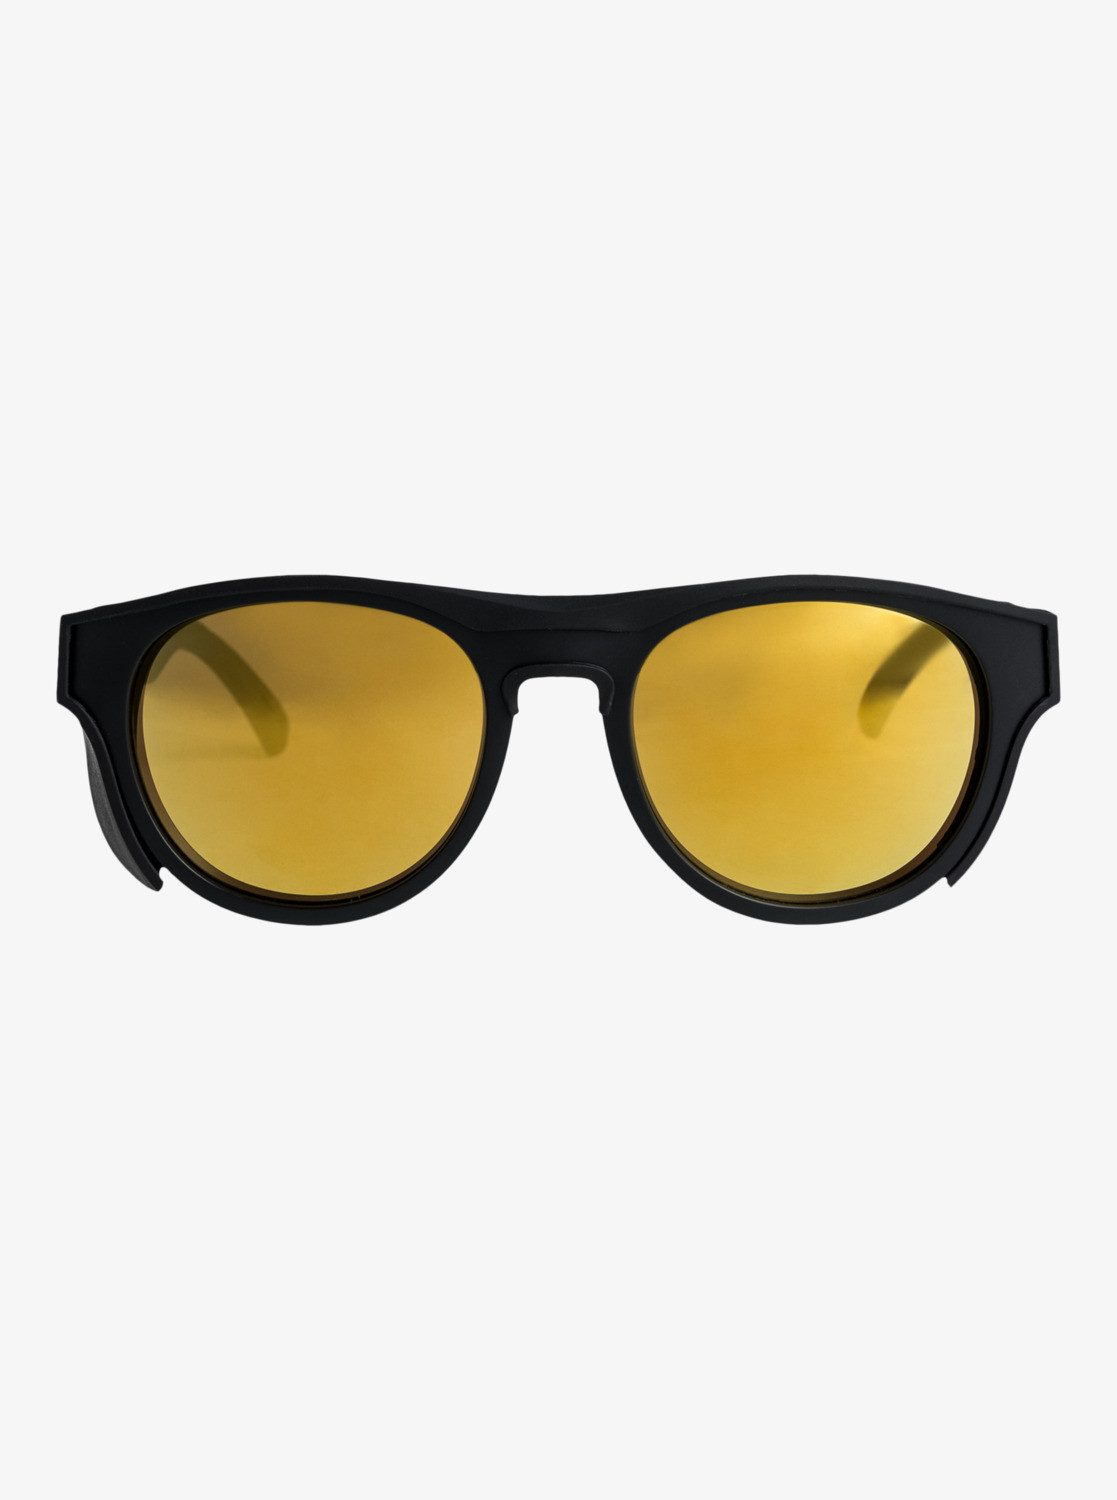 Sonnenbrille Eliminator+ Black/Flash Quiksilver Gold